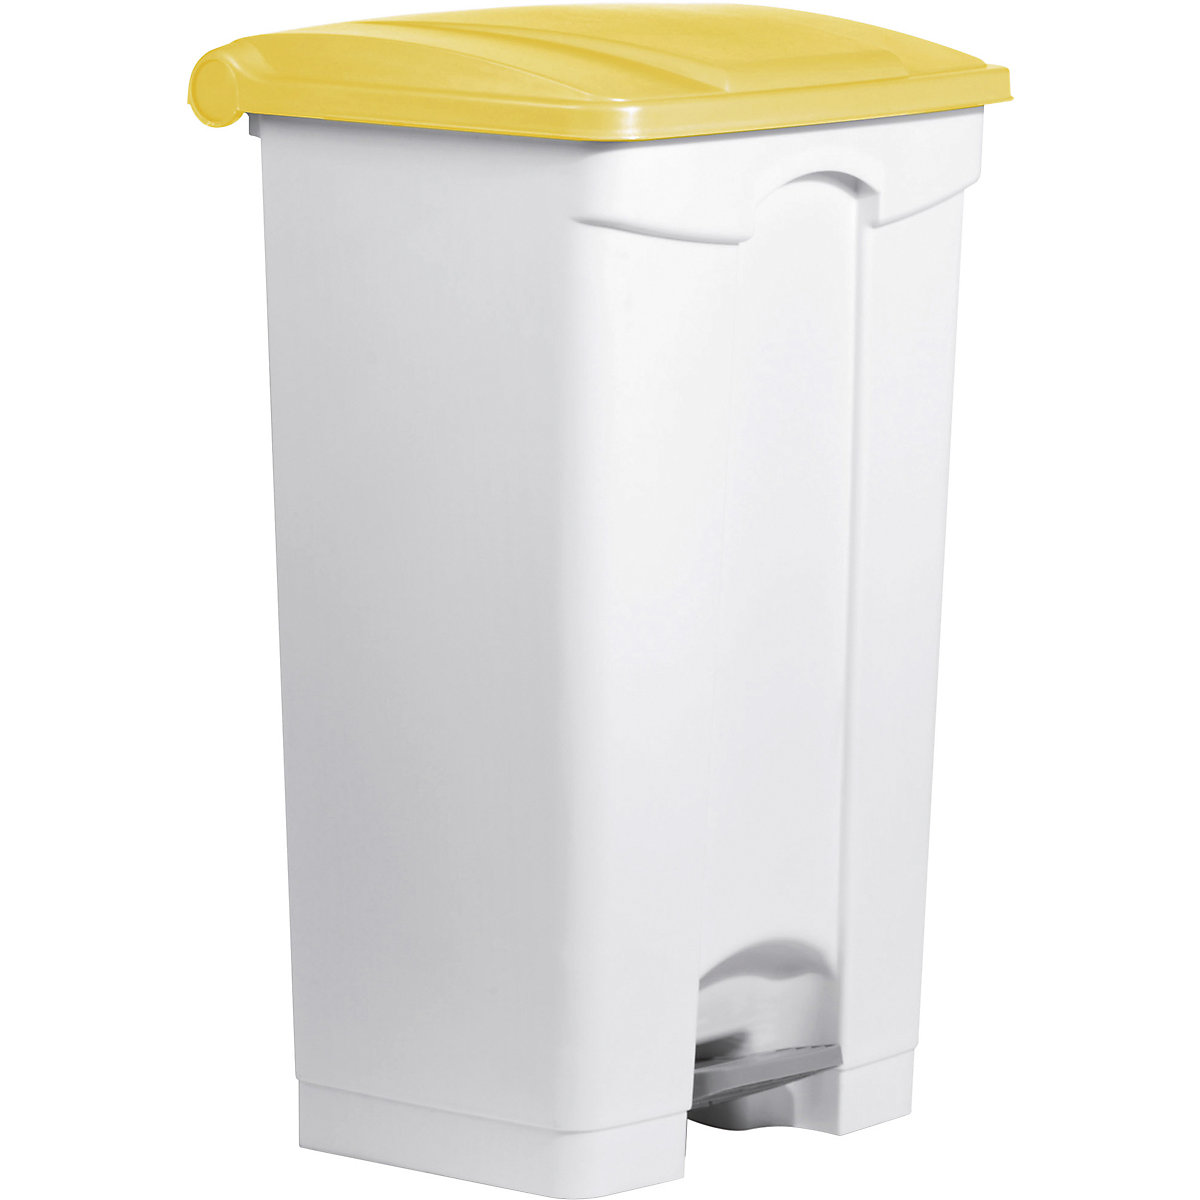 Tretabfallbehälter helit, Volumen 90 l, BxHxT 500 x 830 x 410 mm, weiß, Deckel gelb-7